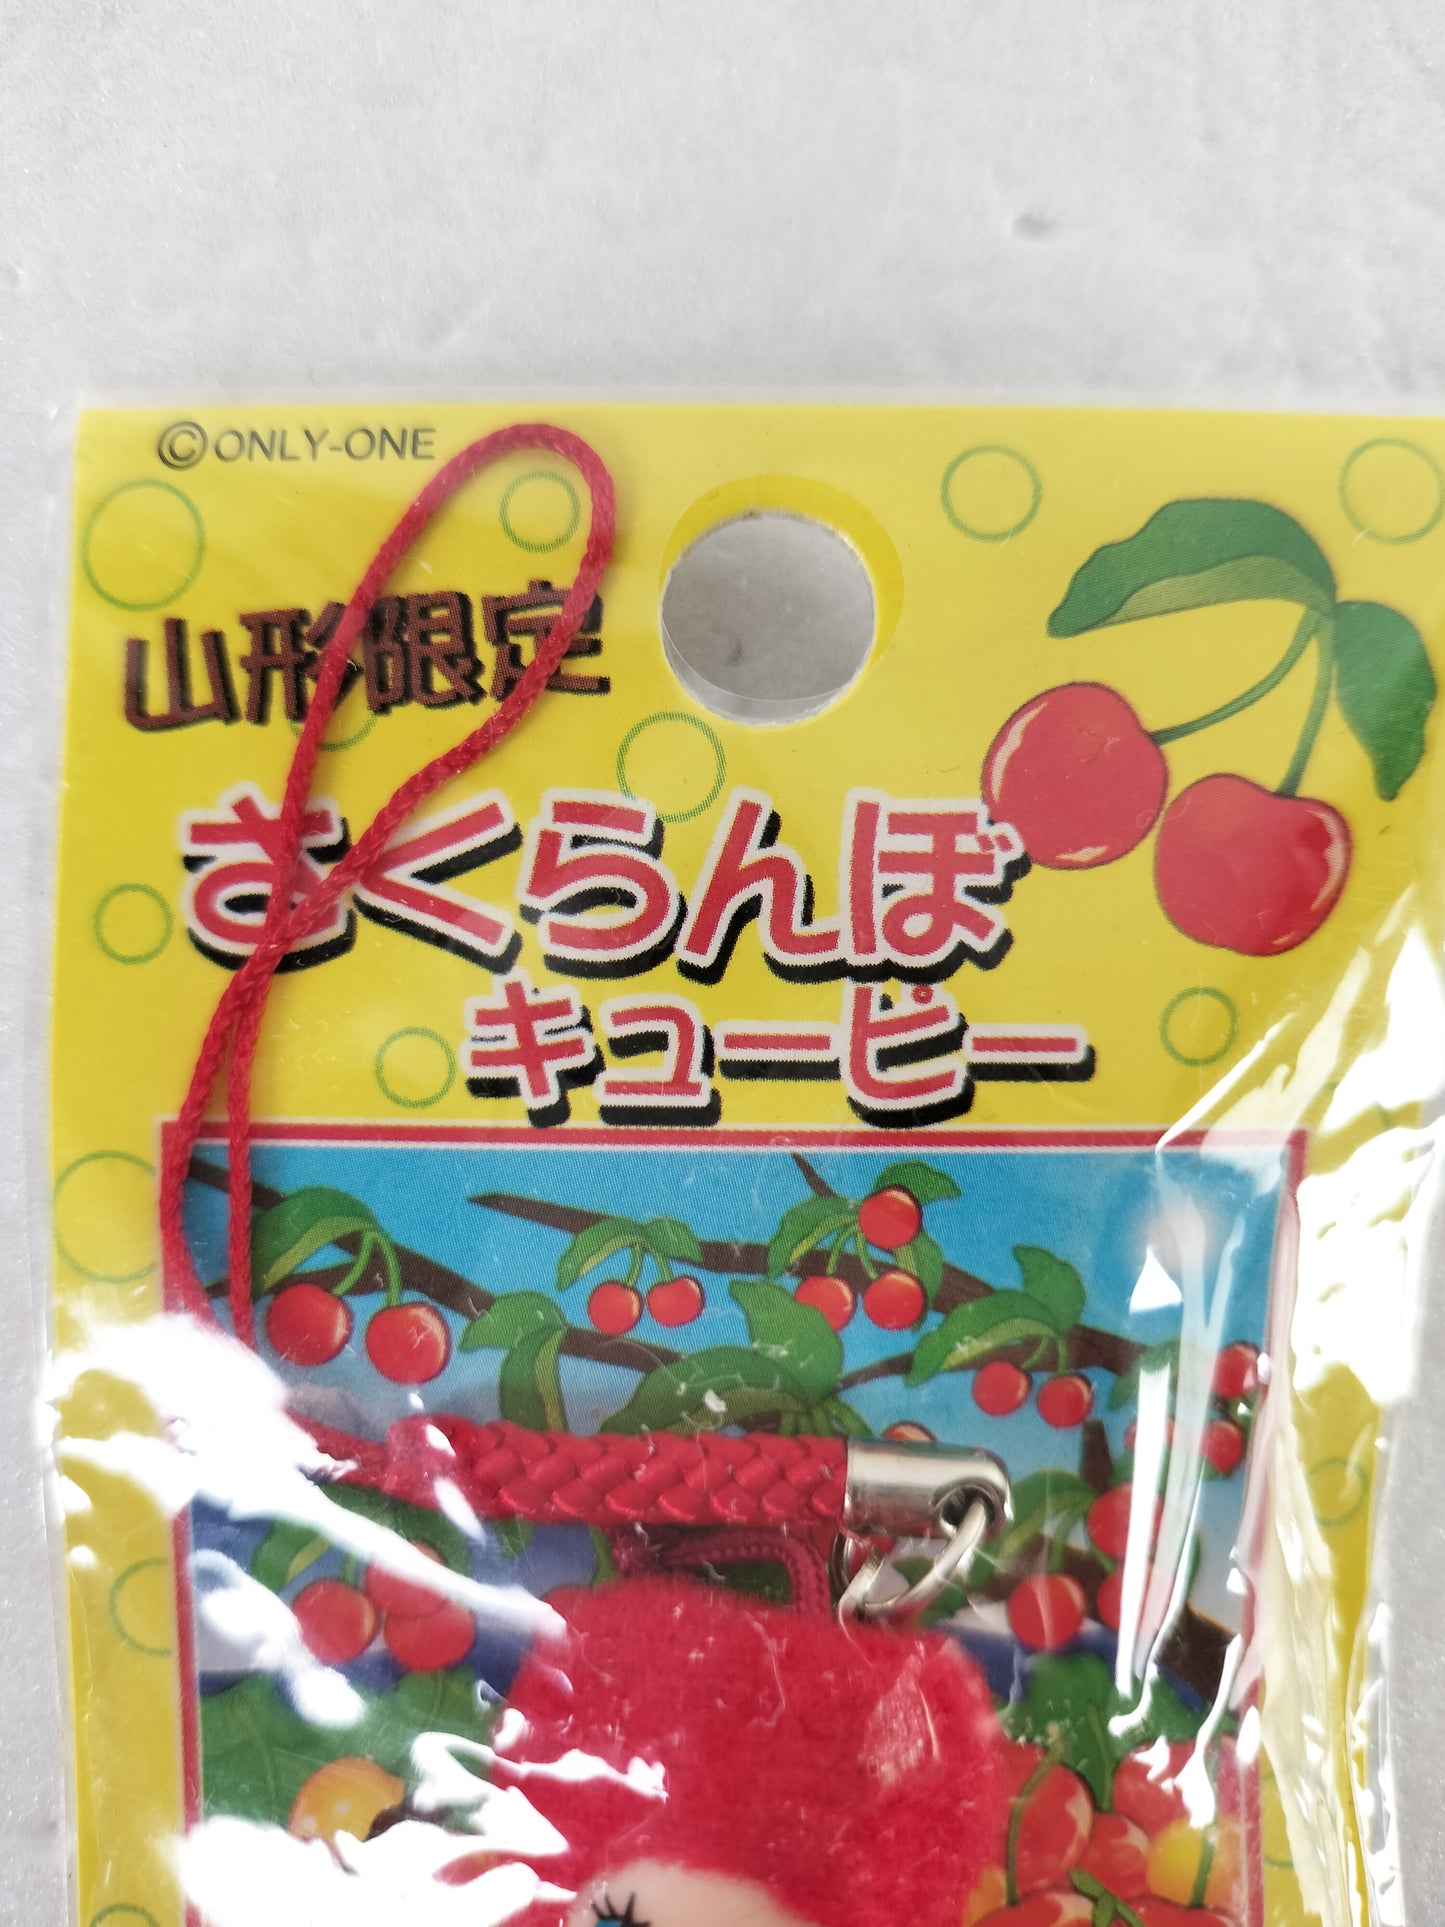 Kewpie Strap Yamagata Prefecture version "Cherry Kewpie" vintage